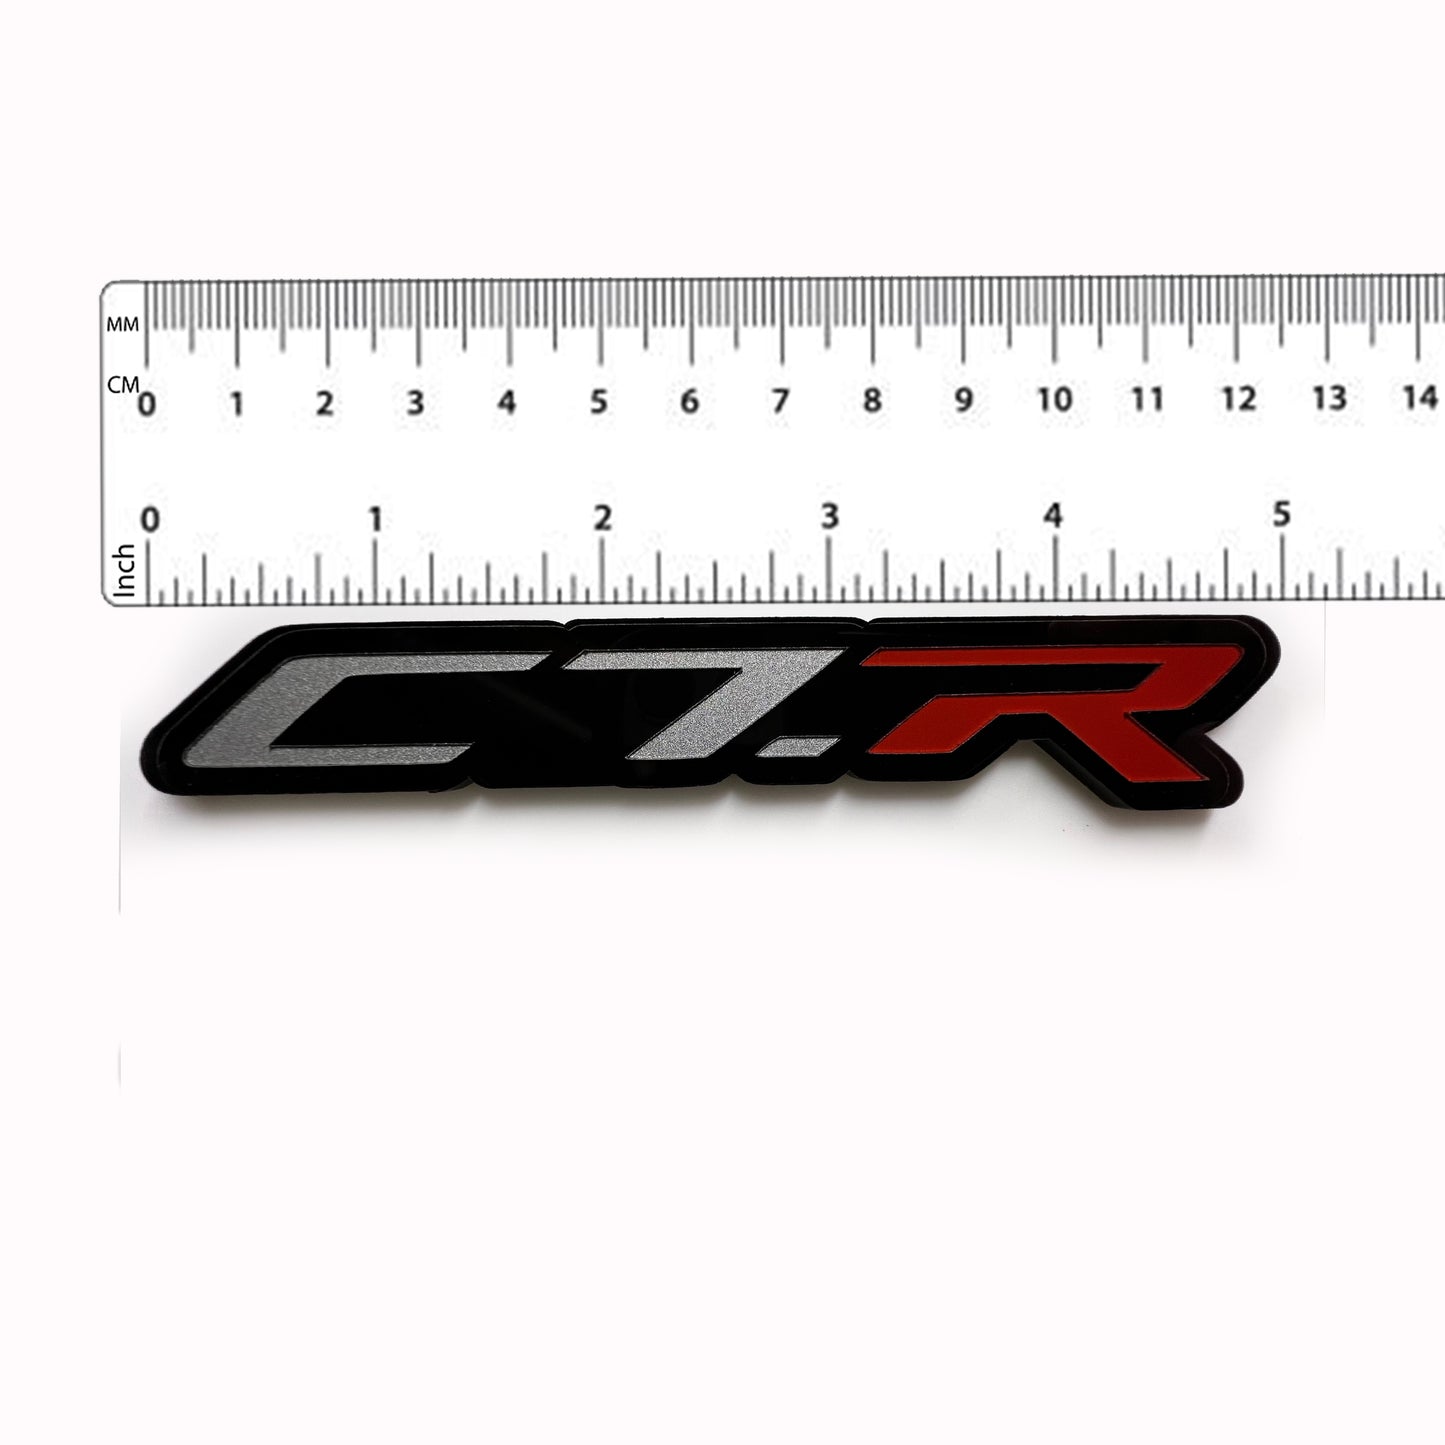 ONE (1) C7.R Emblem fits Chevy Corvette Racing Vette Badges C7R C7-R C7